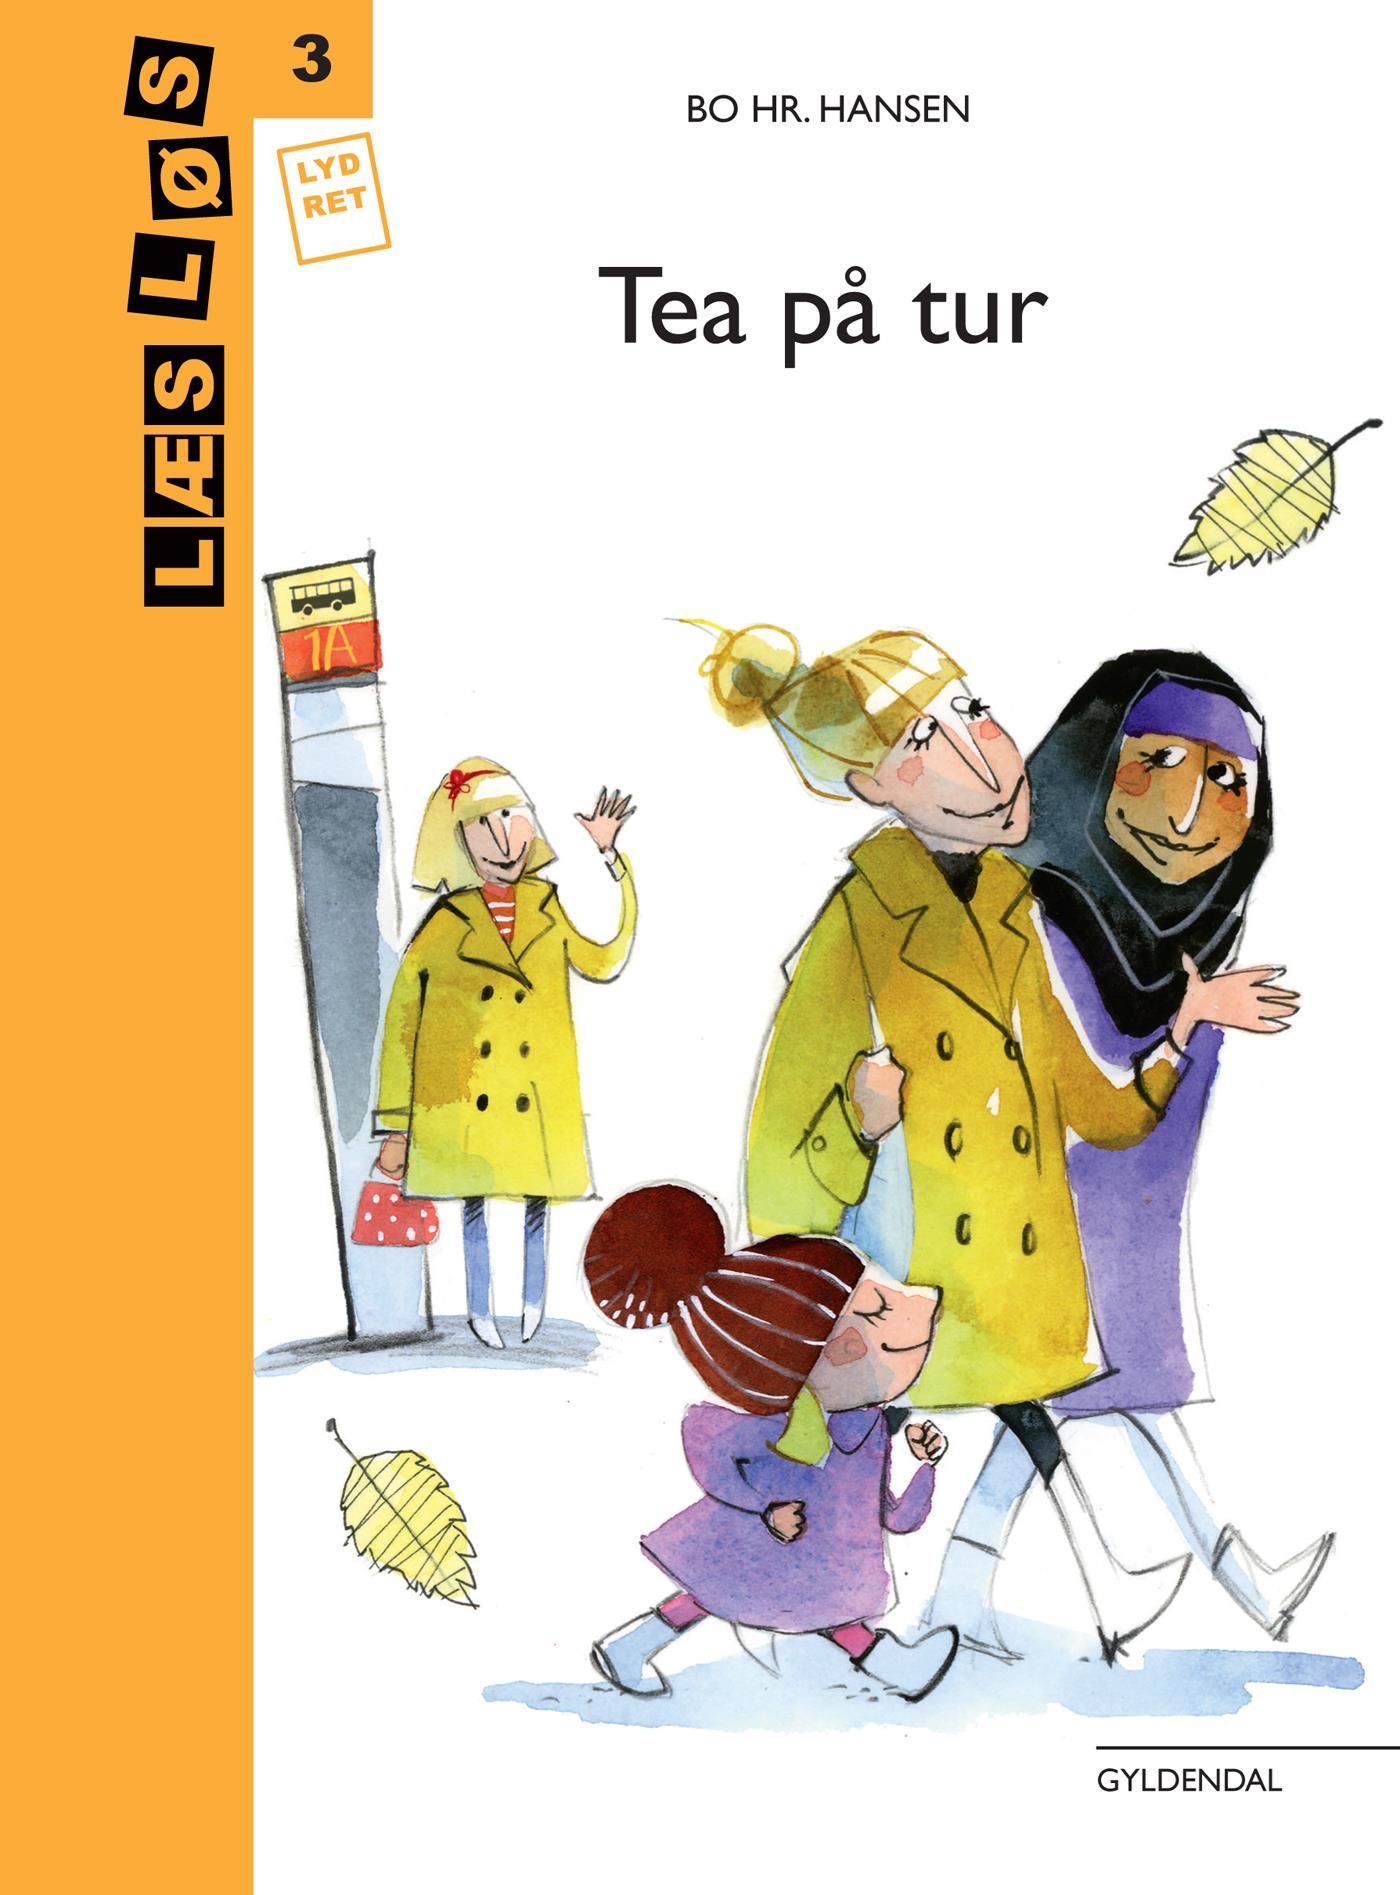 Tea på tur, e-bog af Bo hr. Hansen